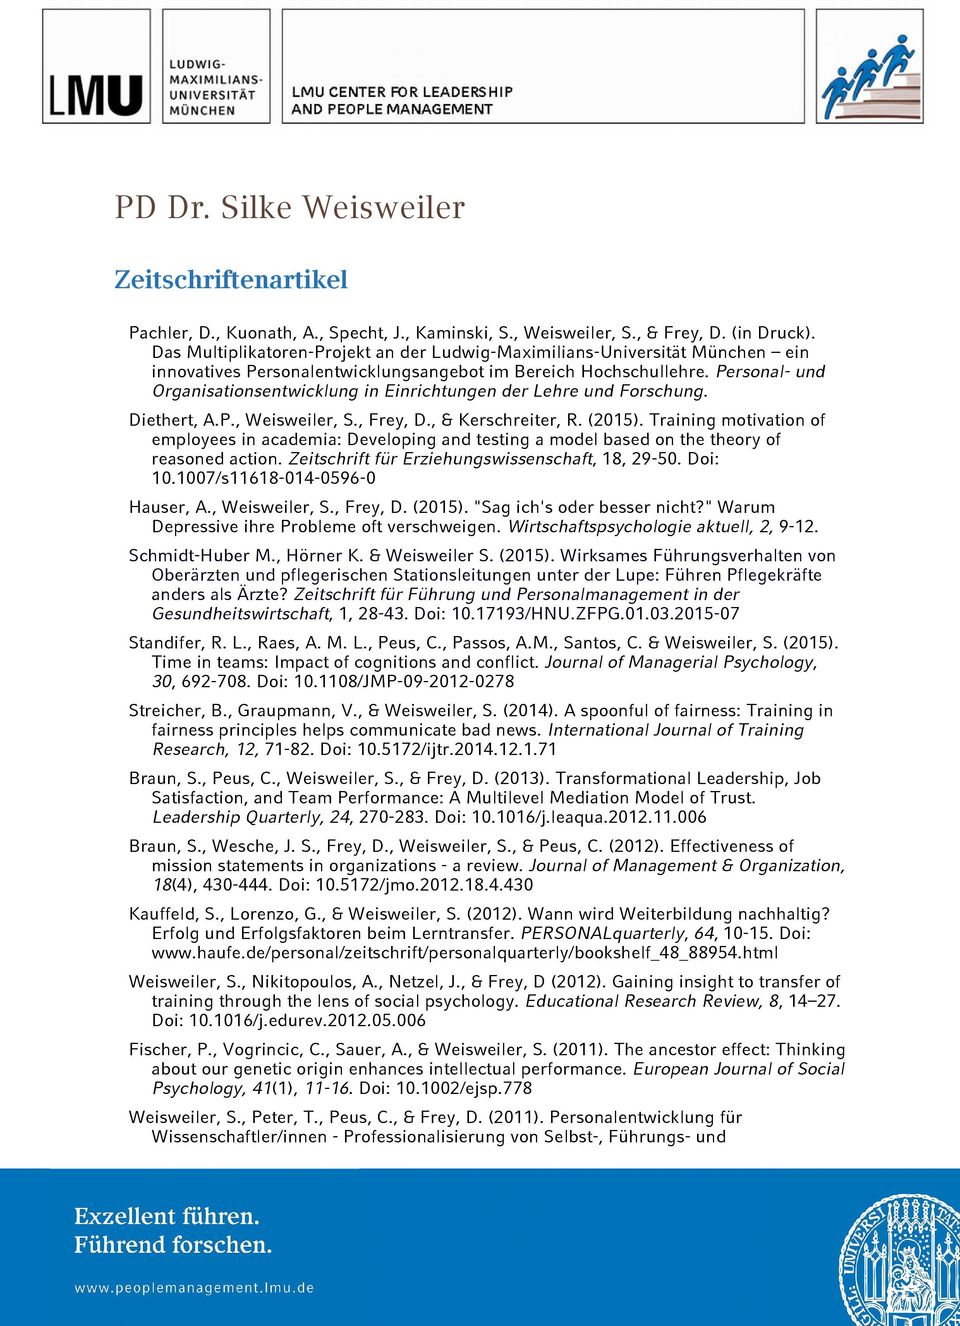 Personal- und Organisationsentwicklung in Einrichtungen der Lehre und Forschung. Diethert, A.P., Weisweiler, S., Frey, D., & Kerschreiter, R. (2015).